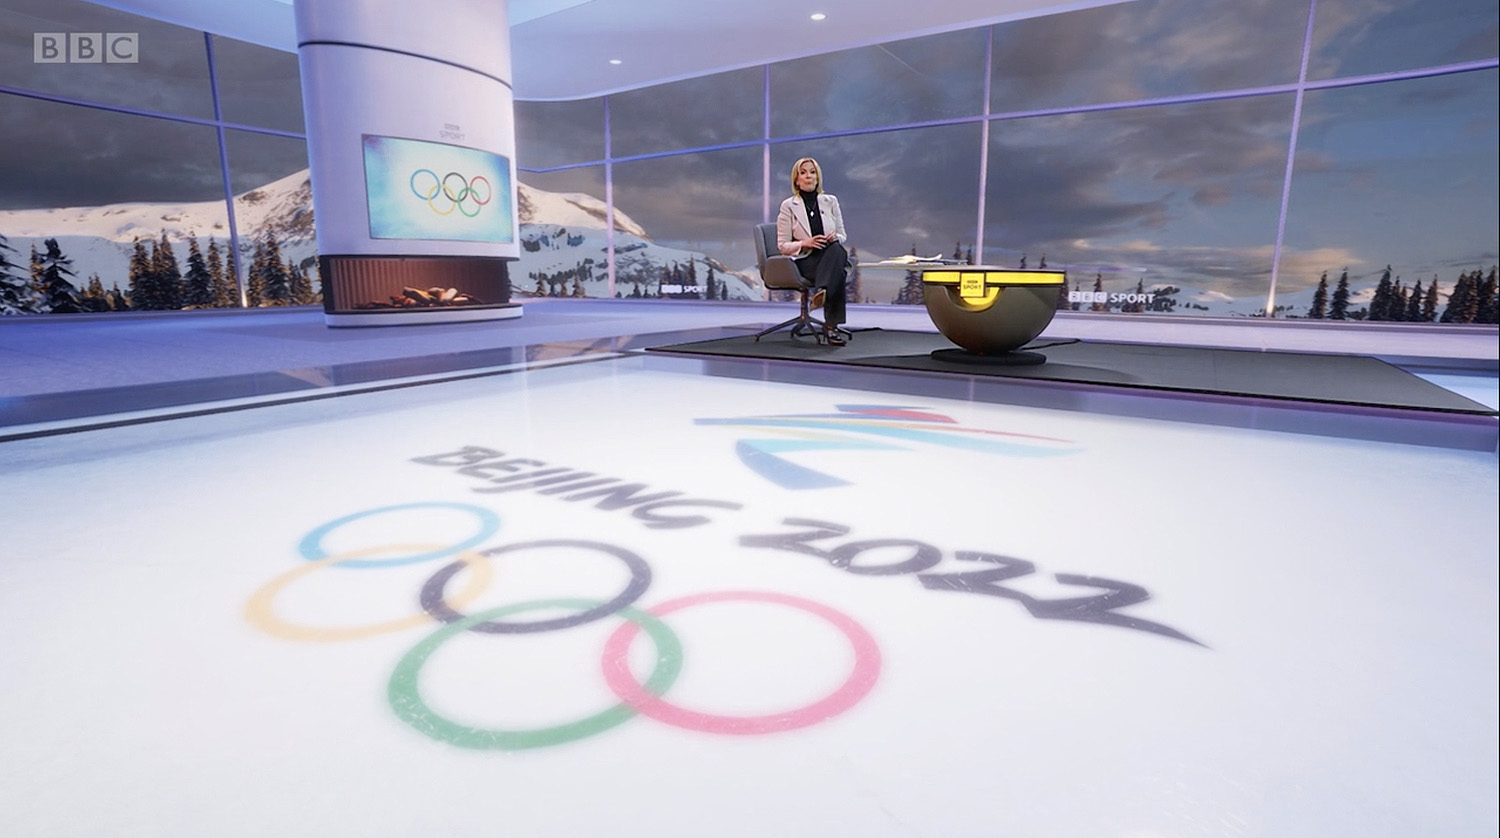 NCS_BBC-Olympics_beijing-studio_06